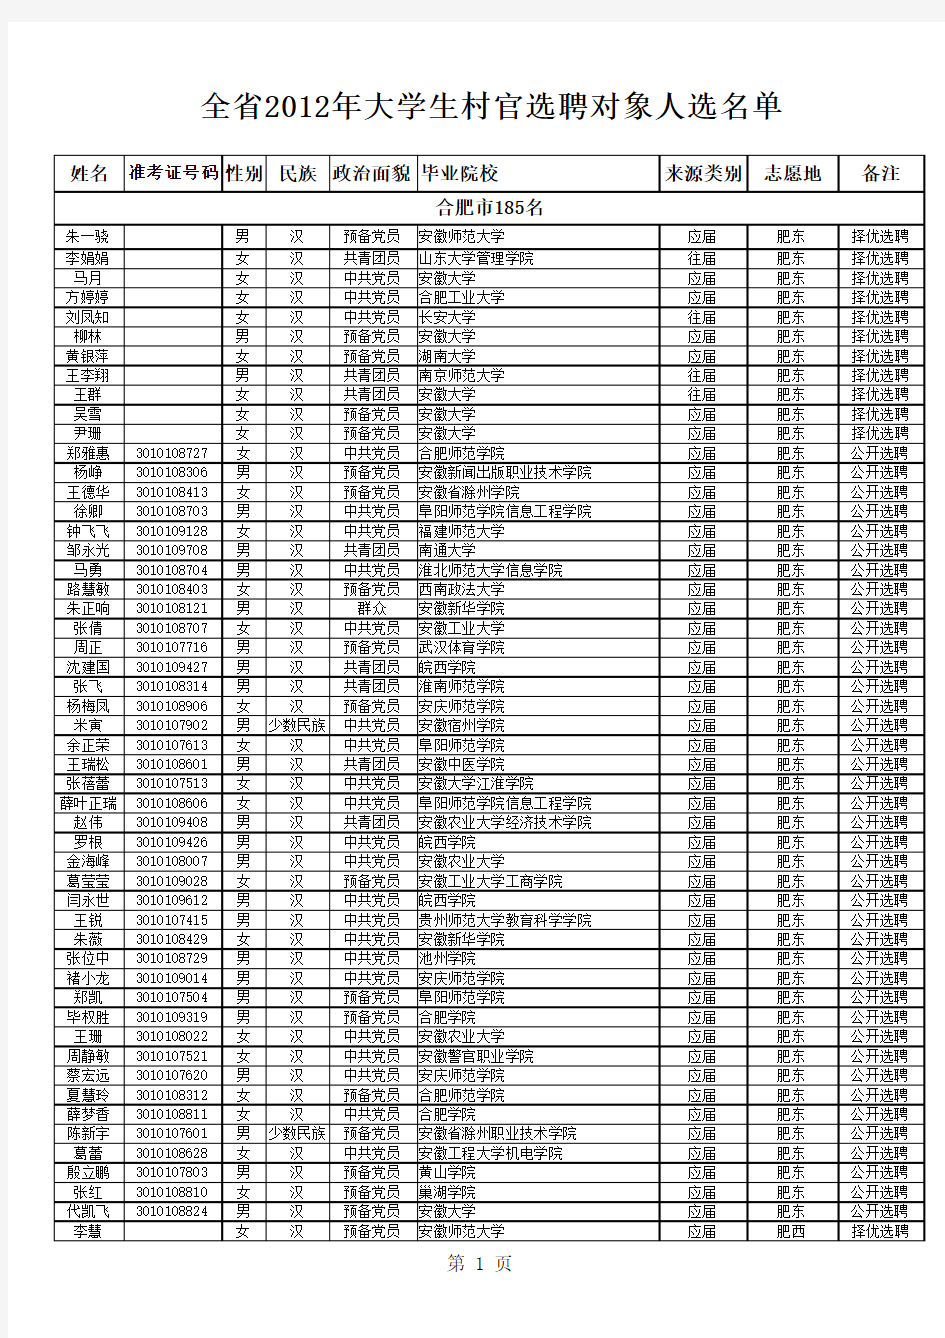 2012安徽大学生村官公示名单